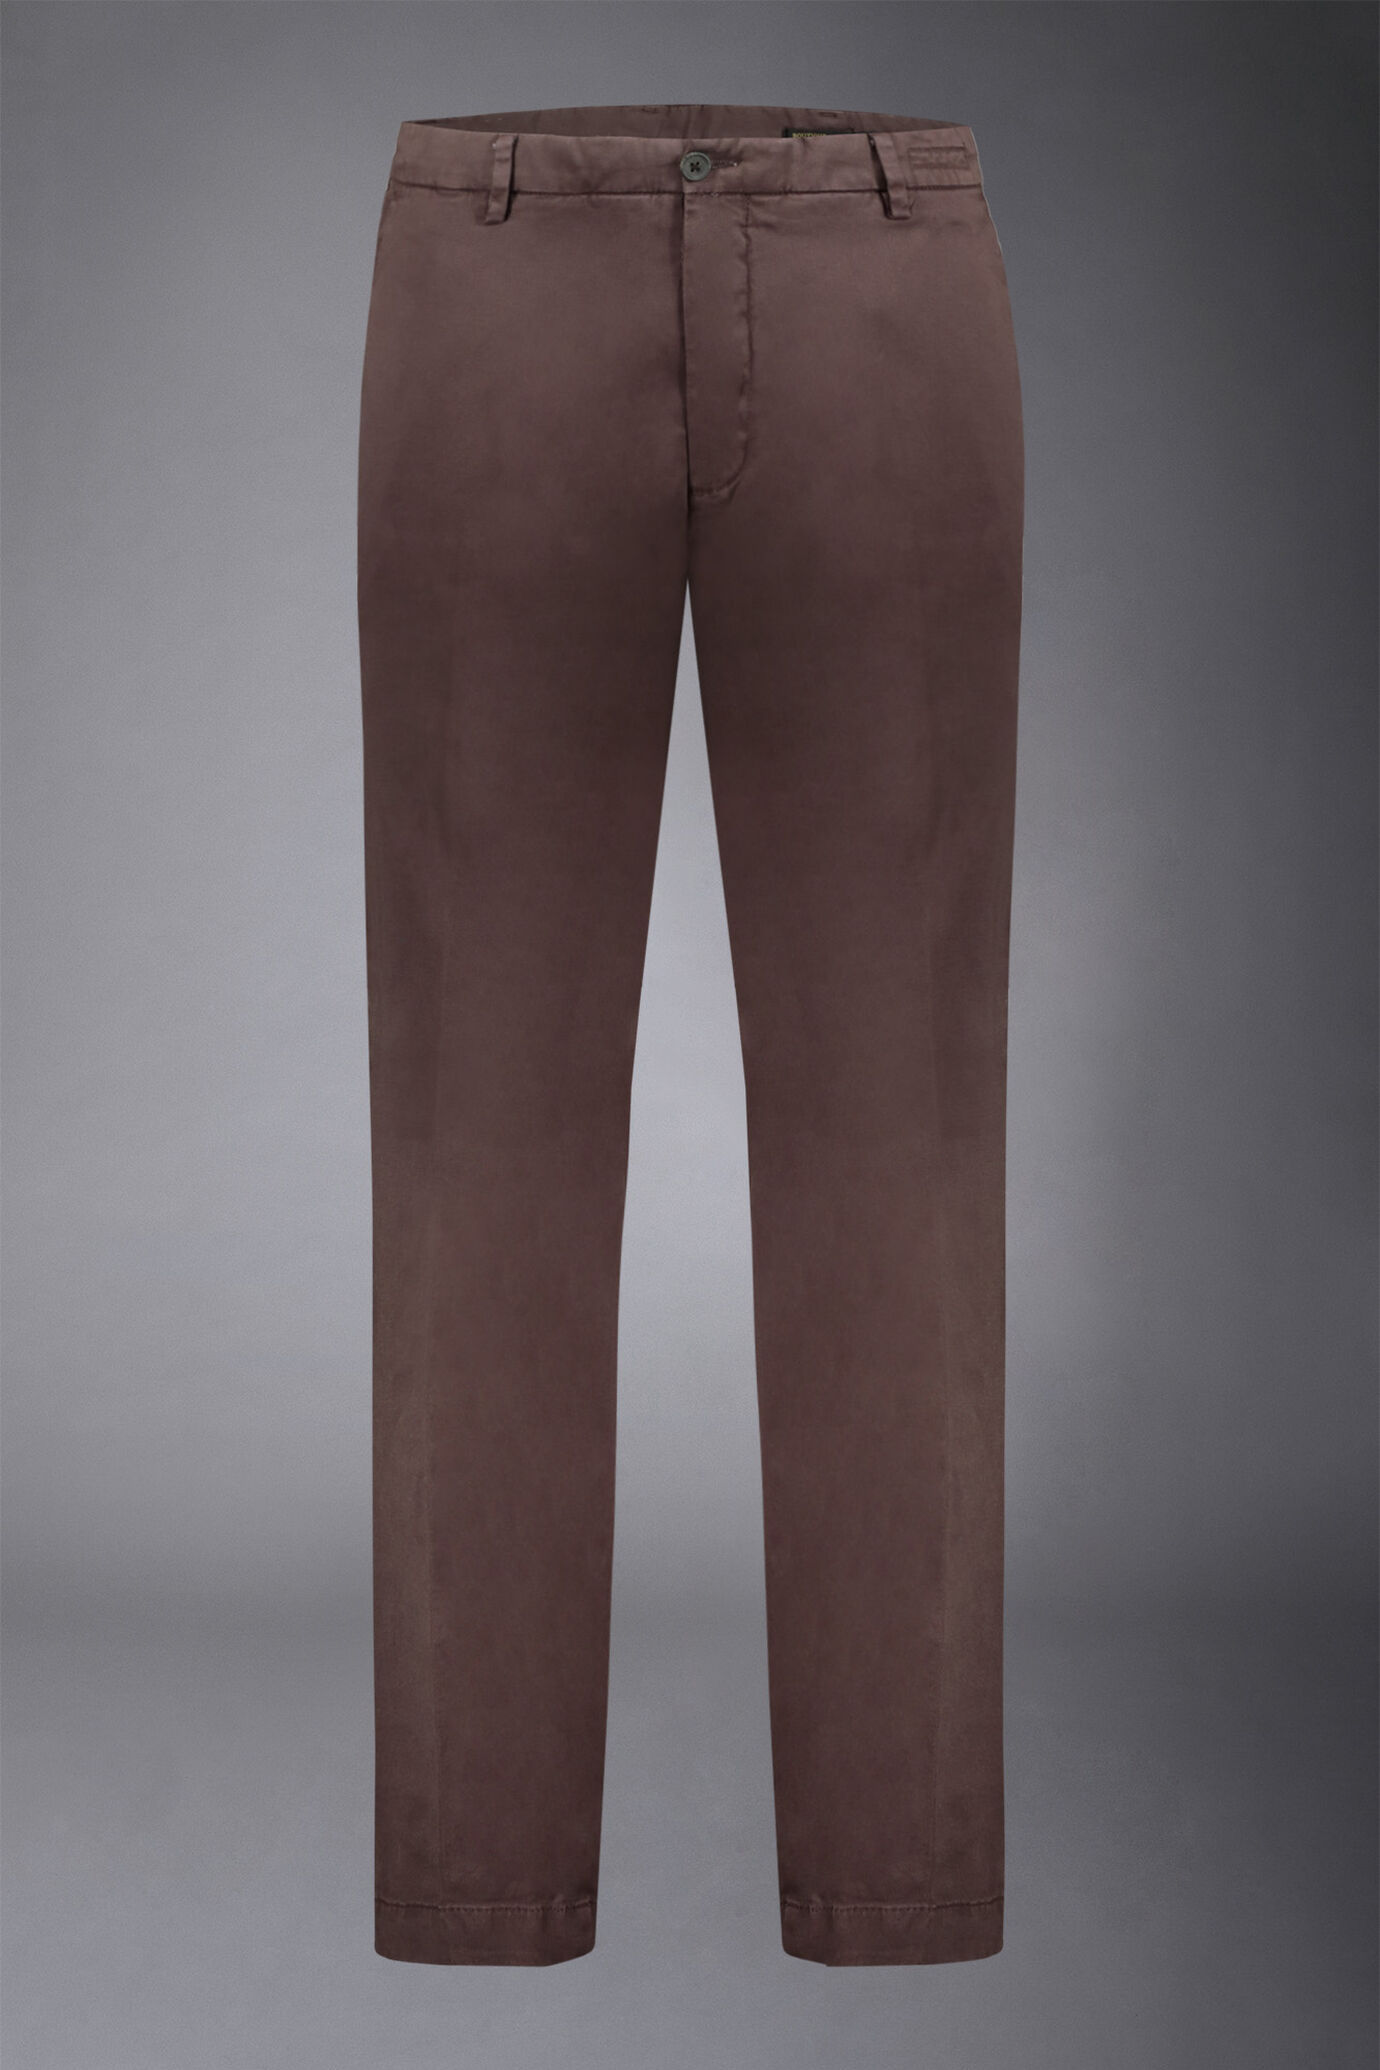 Pantalone chino uomo classico costruzione twill regular fit image number 4